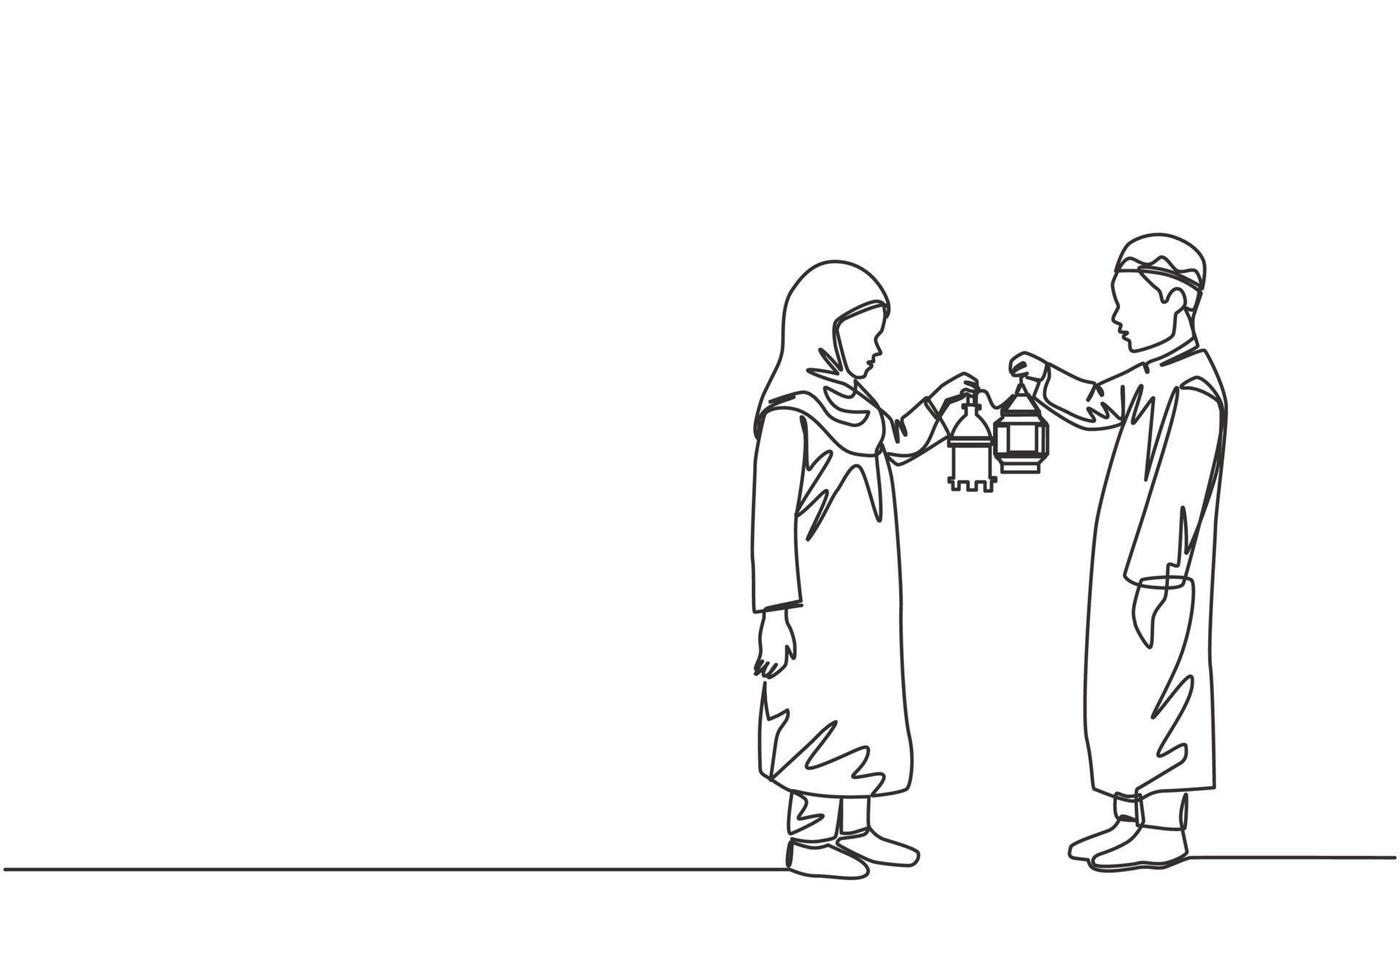 Ramadã kareem cumprimento cartão, poster e bandeira Projeto fundo. solteiro contínuo linha desenhando do dois jovem muçulmano islâmico Garoto e menina segurando lanterna lâmpada. 1 linha desenhar vetor ilustração